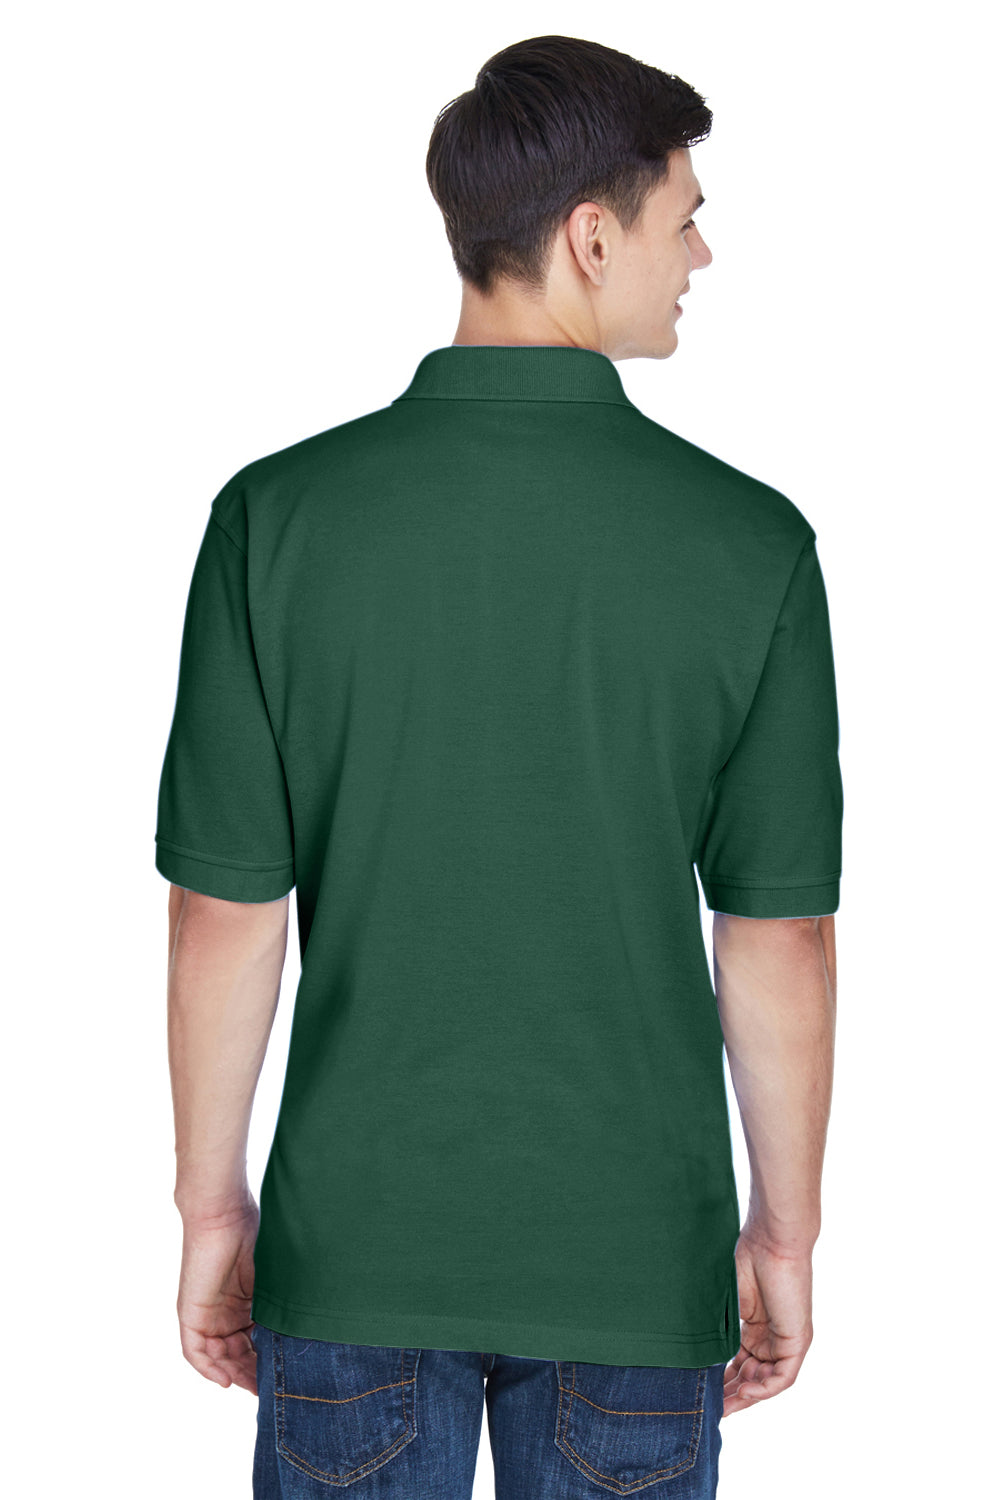 Harriton M265 Mens Easy Blend Wrinkle Resistant Short Sleeve Polo Shirt Hunter Green Back